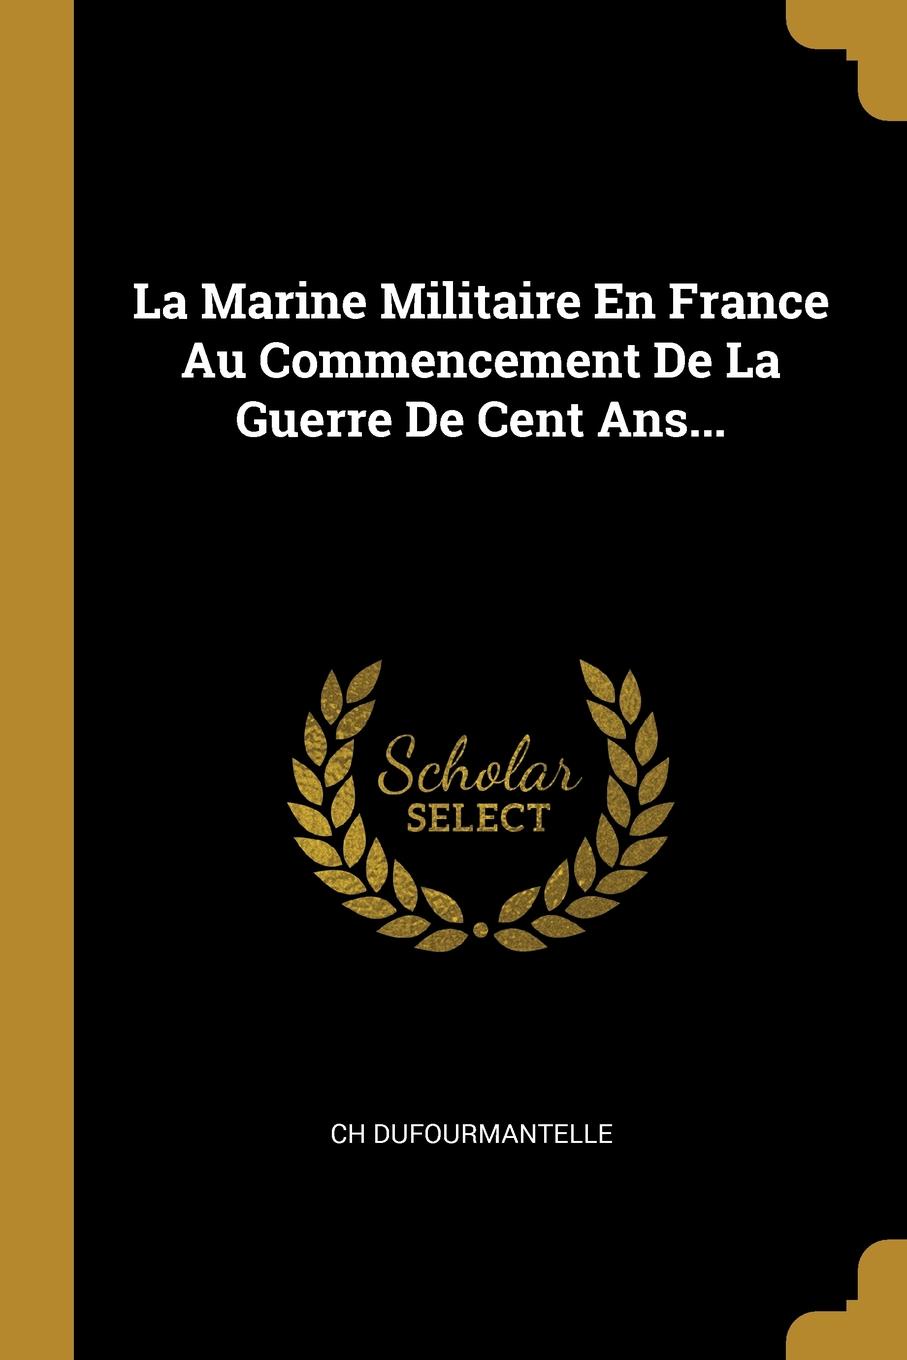 La Marine Militaire En France Au Commencement De La Guerre De Cent Ans...